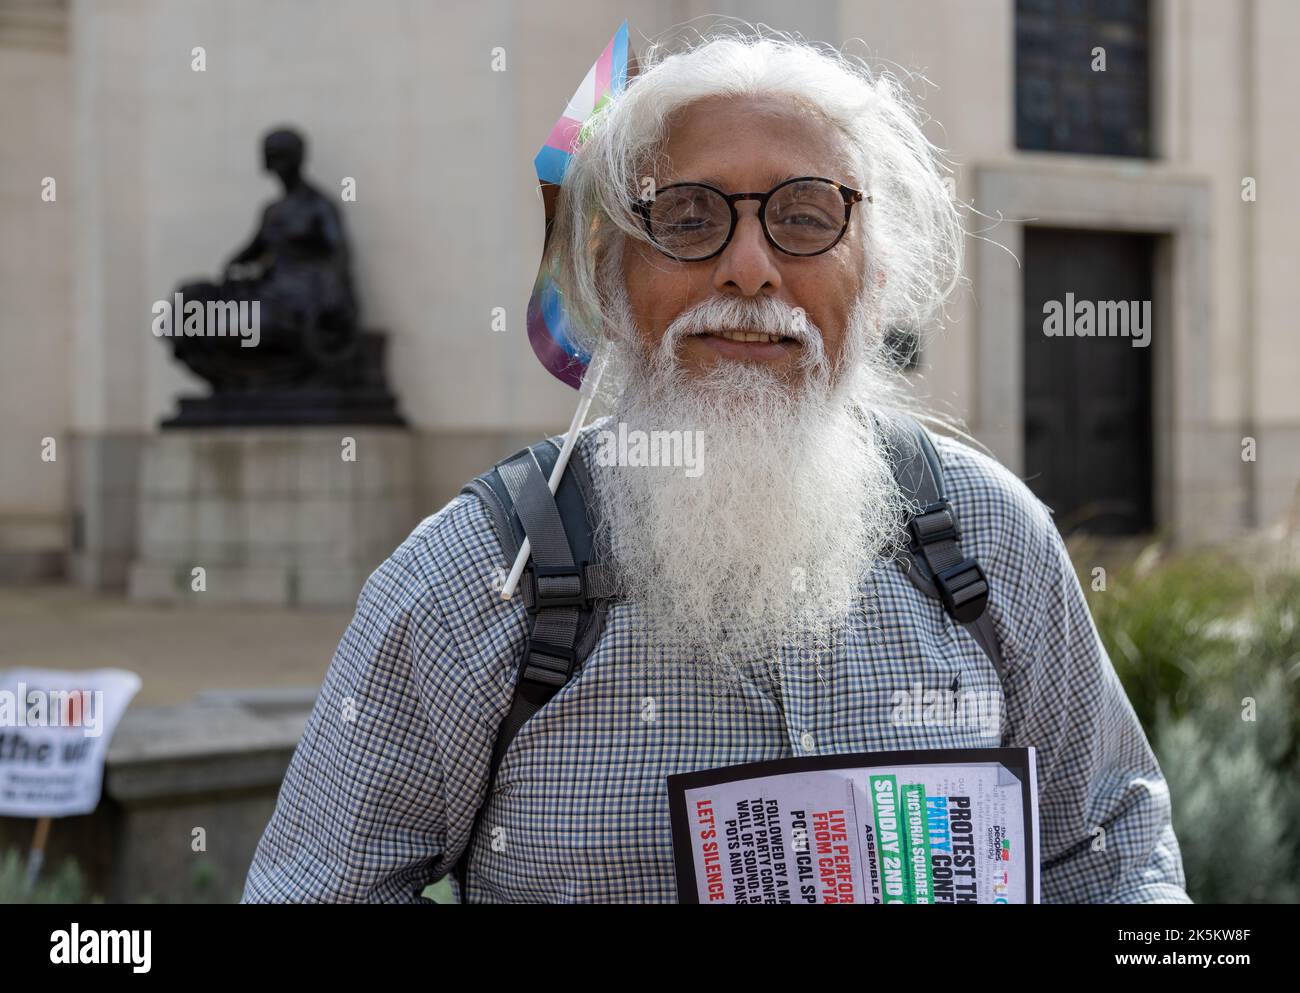 Un partisan de l'Assemblée populaire fait pression pour protester contre la conférence du Parti conservateur à Birmingham. Un homme avec de longues cheveux blancs et la barbe. Banque D'Images